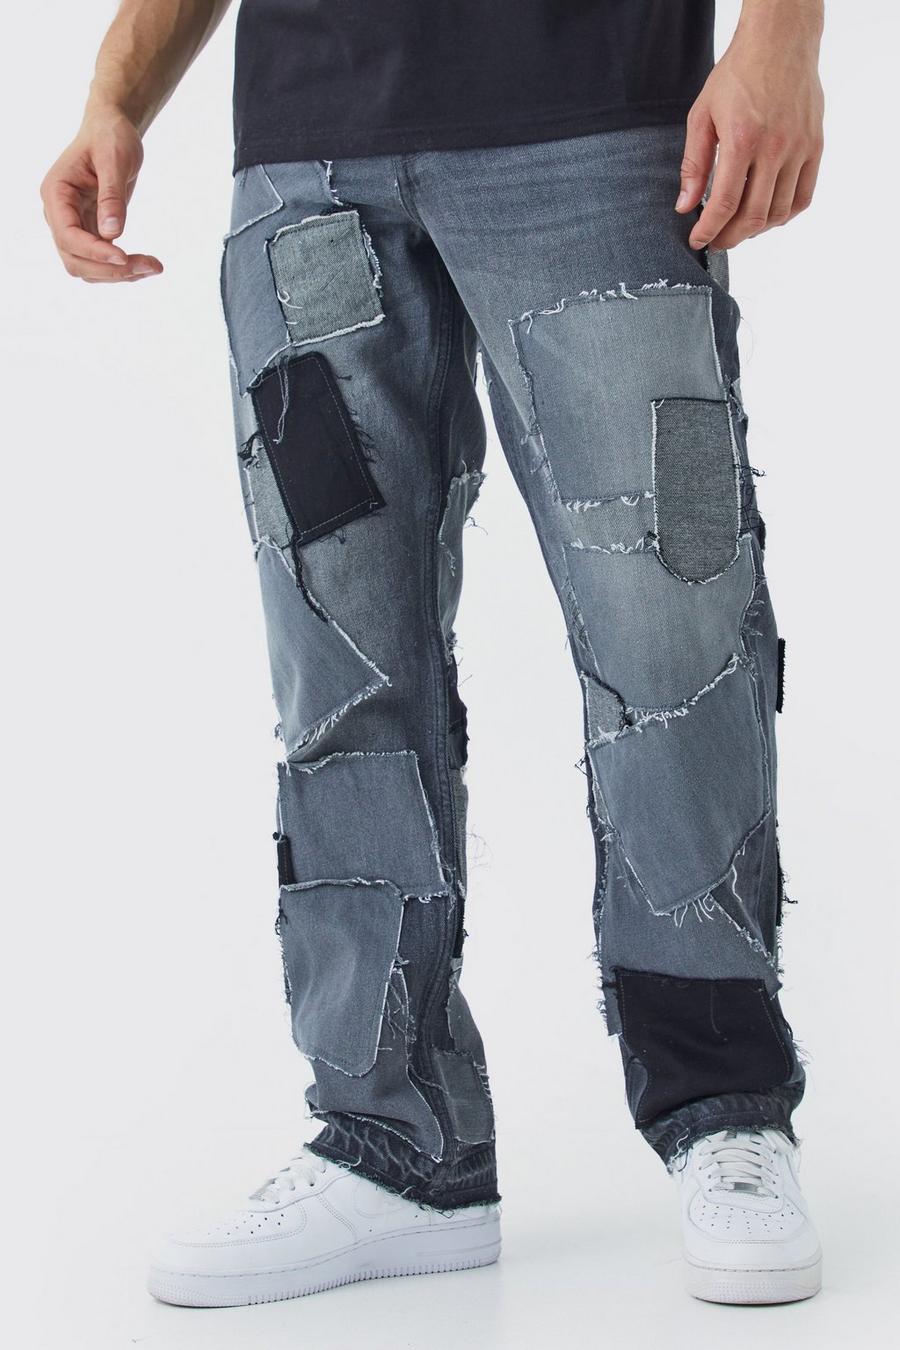 Jeans rilassati effetto smagliato effetto patchwork, Charcoal